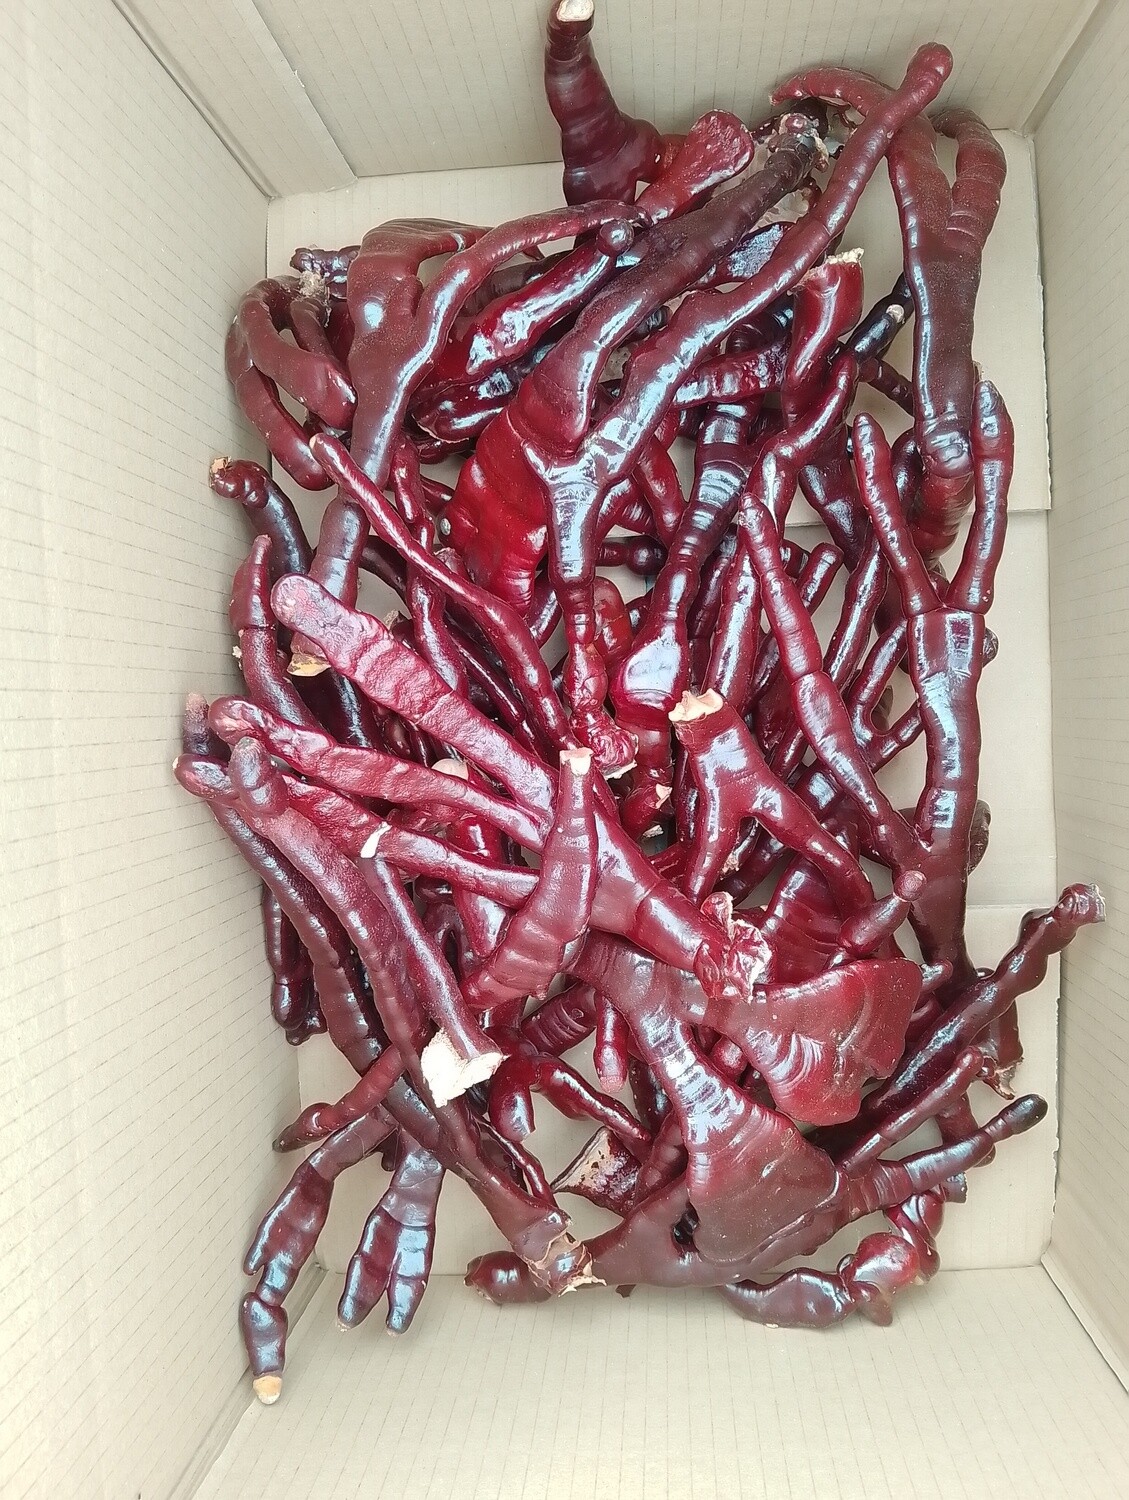 Fresh Dried Whole Reishi Antlers